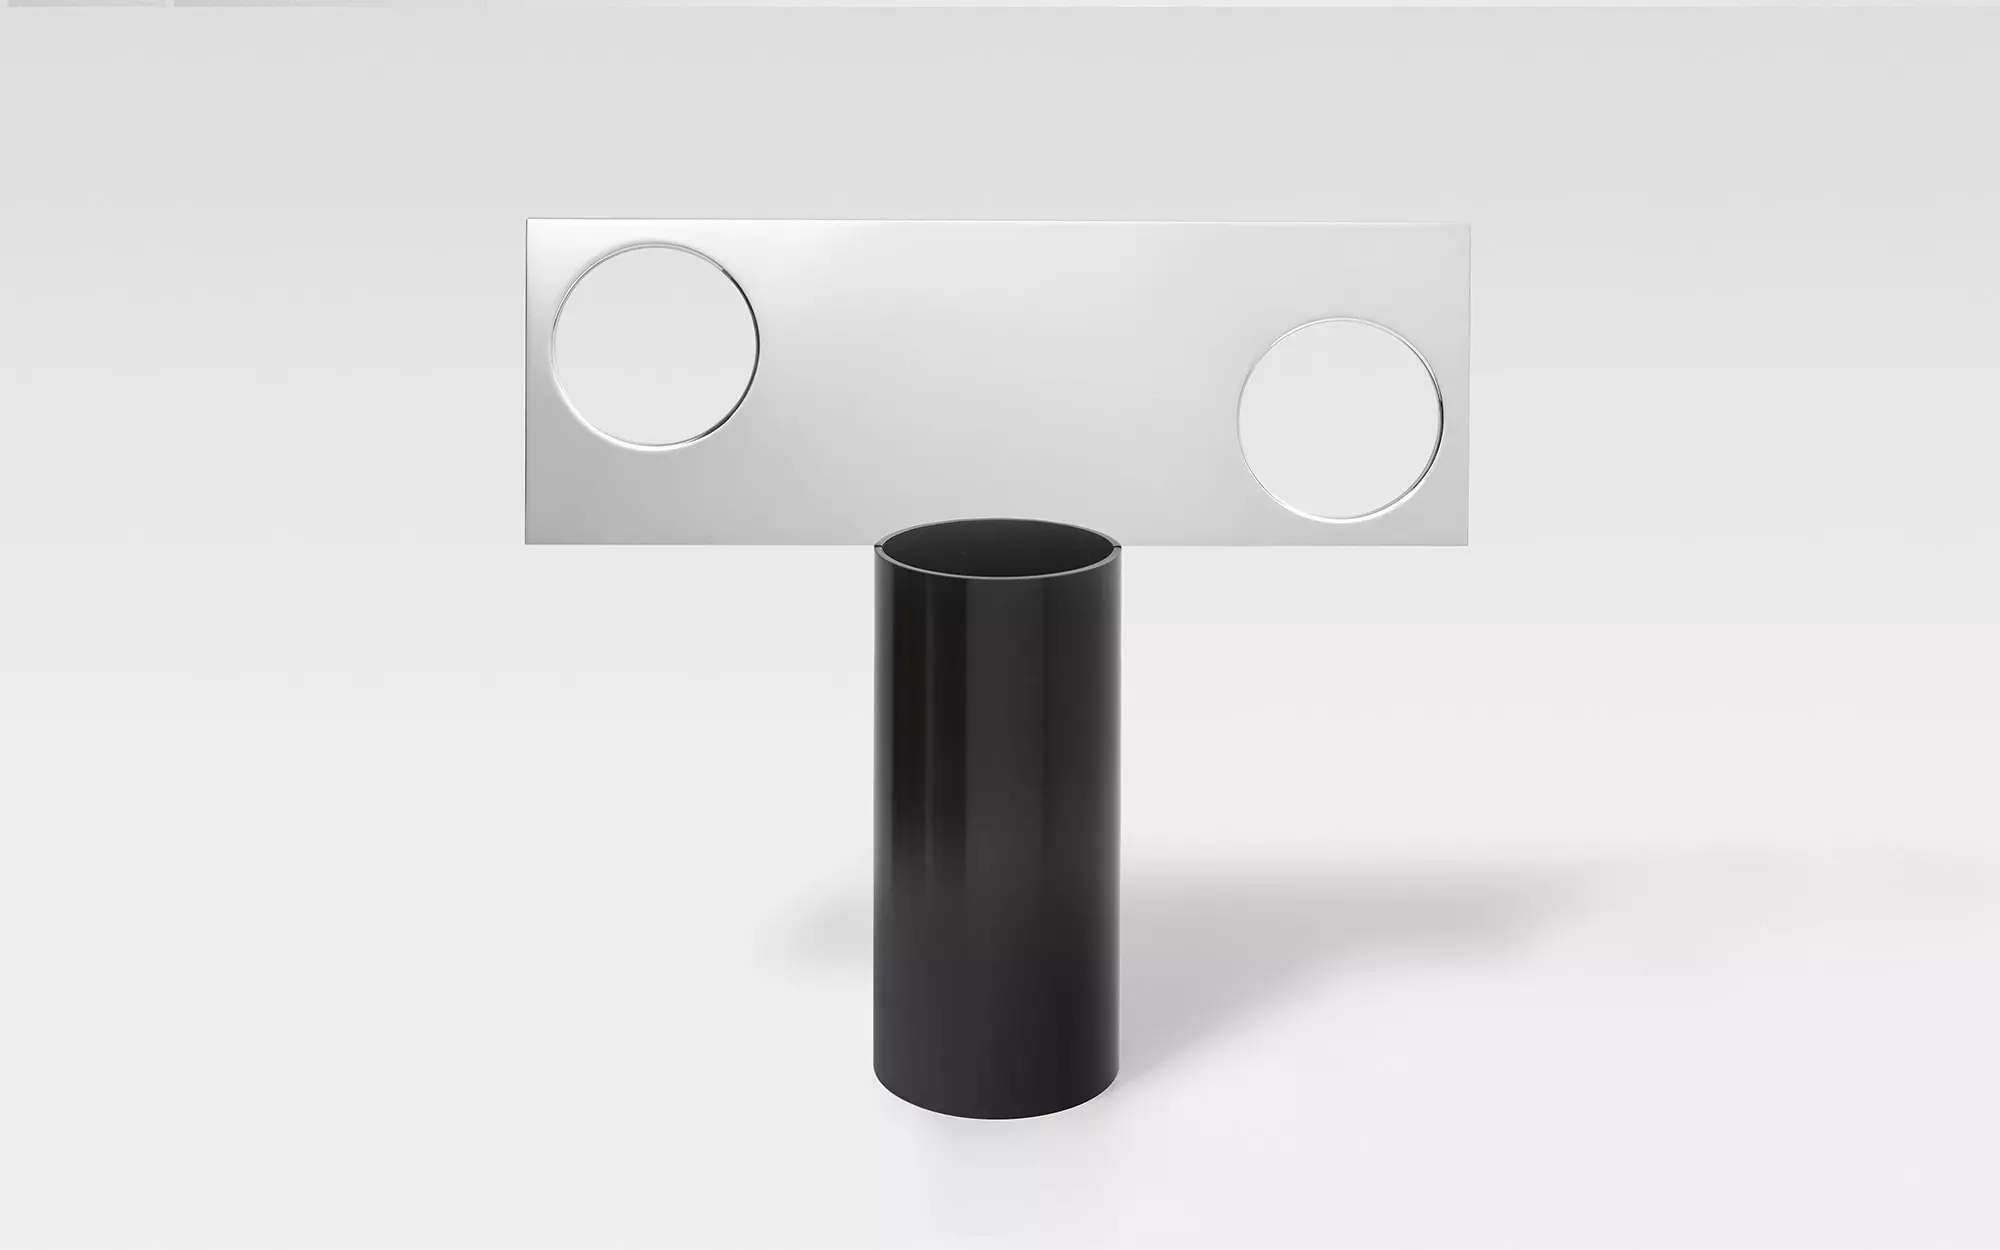 Lunettes - 1 Vase - Pierre Charpin - Table light - Galerie kreo